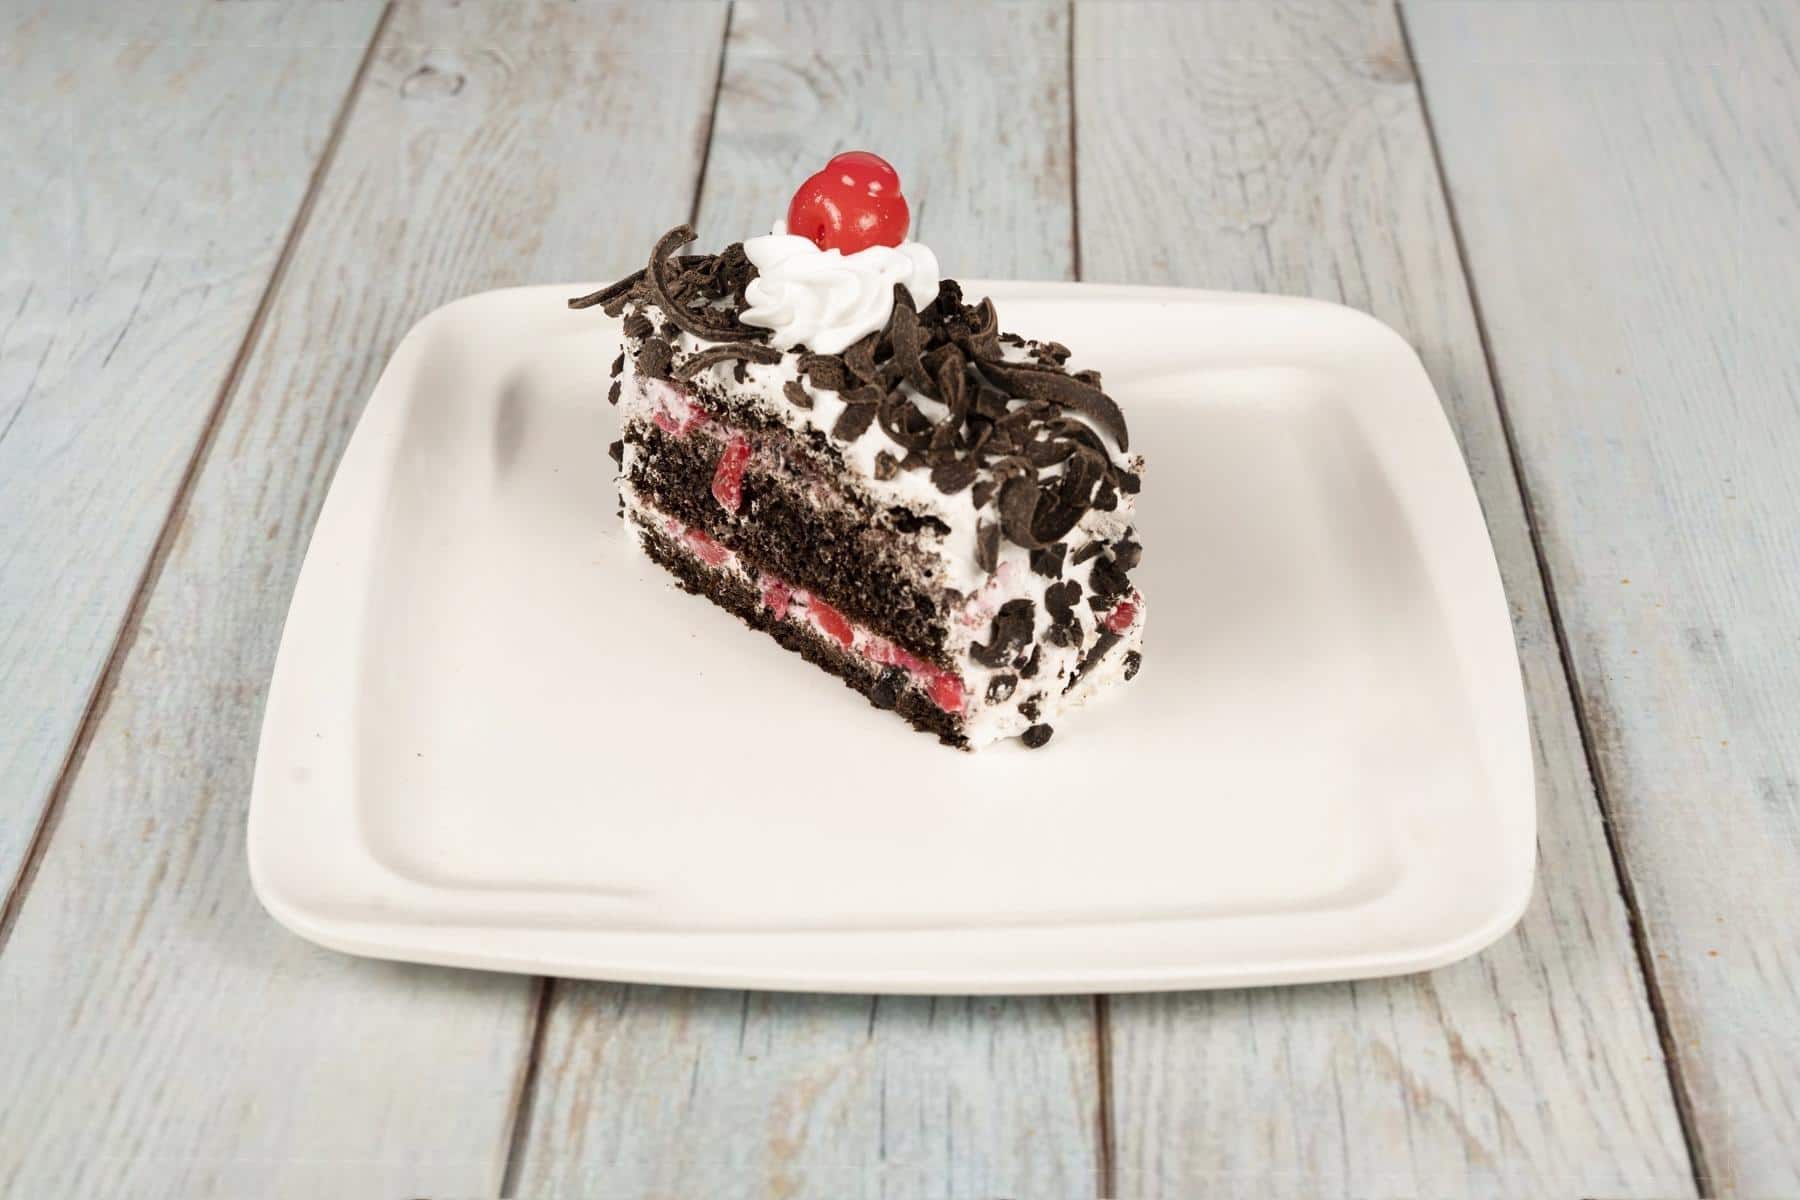 CAKE BLISS MUZAFFARPUR BIHAR ||Best cake in muzaffarpur ||#cake ||# muzaffarpur ||#review ||PSV - YouTube